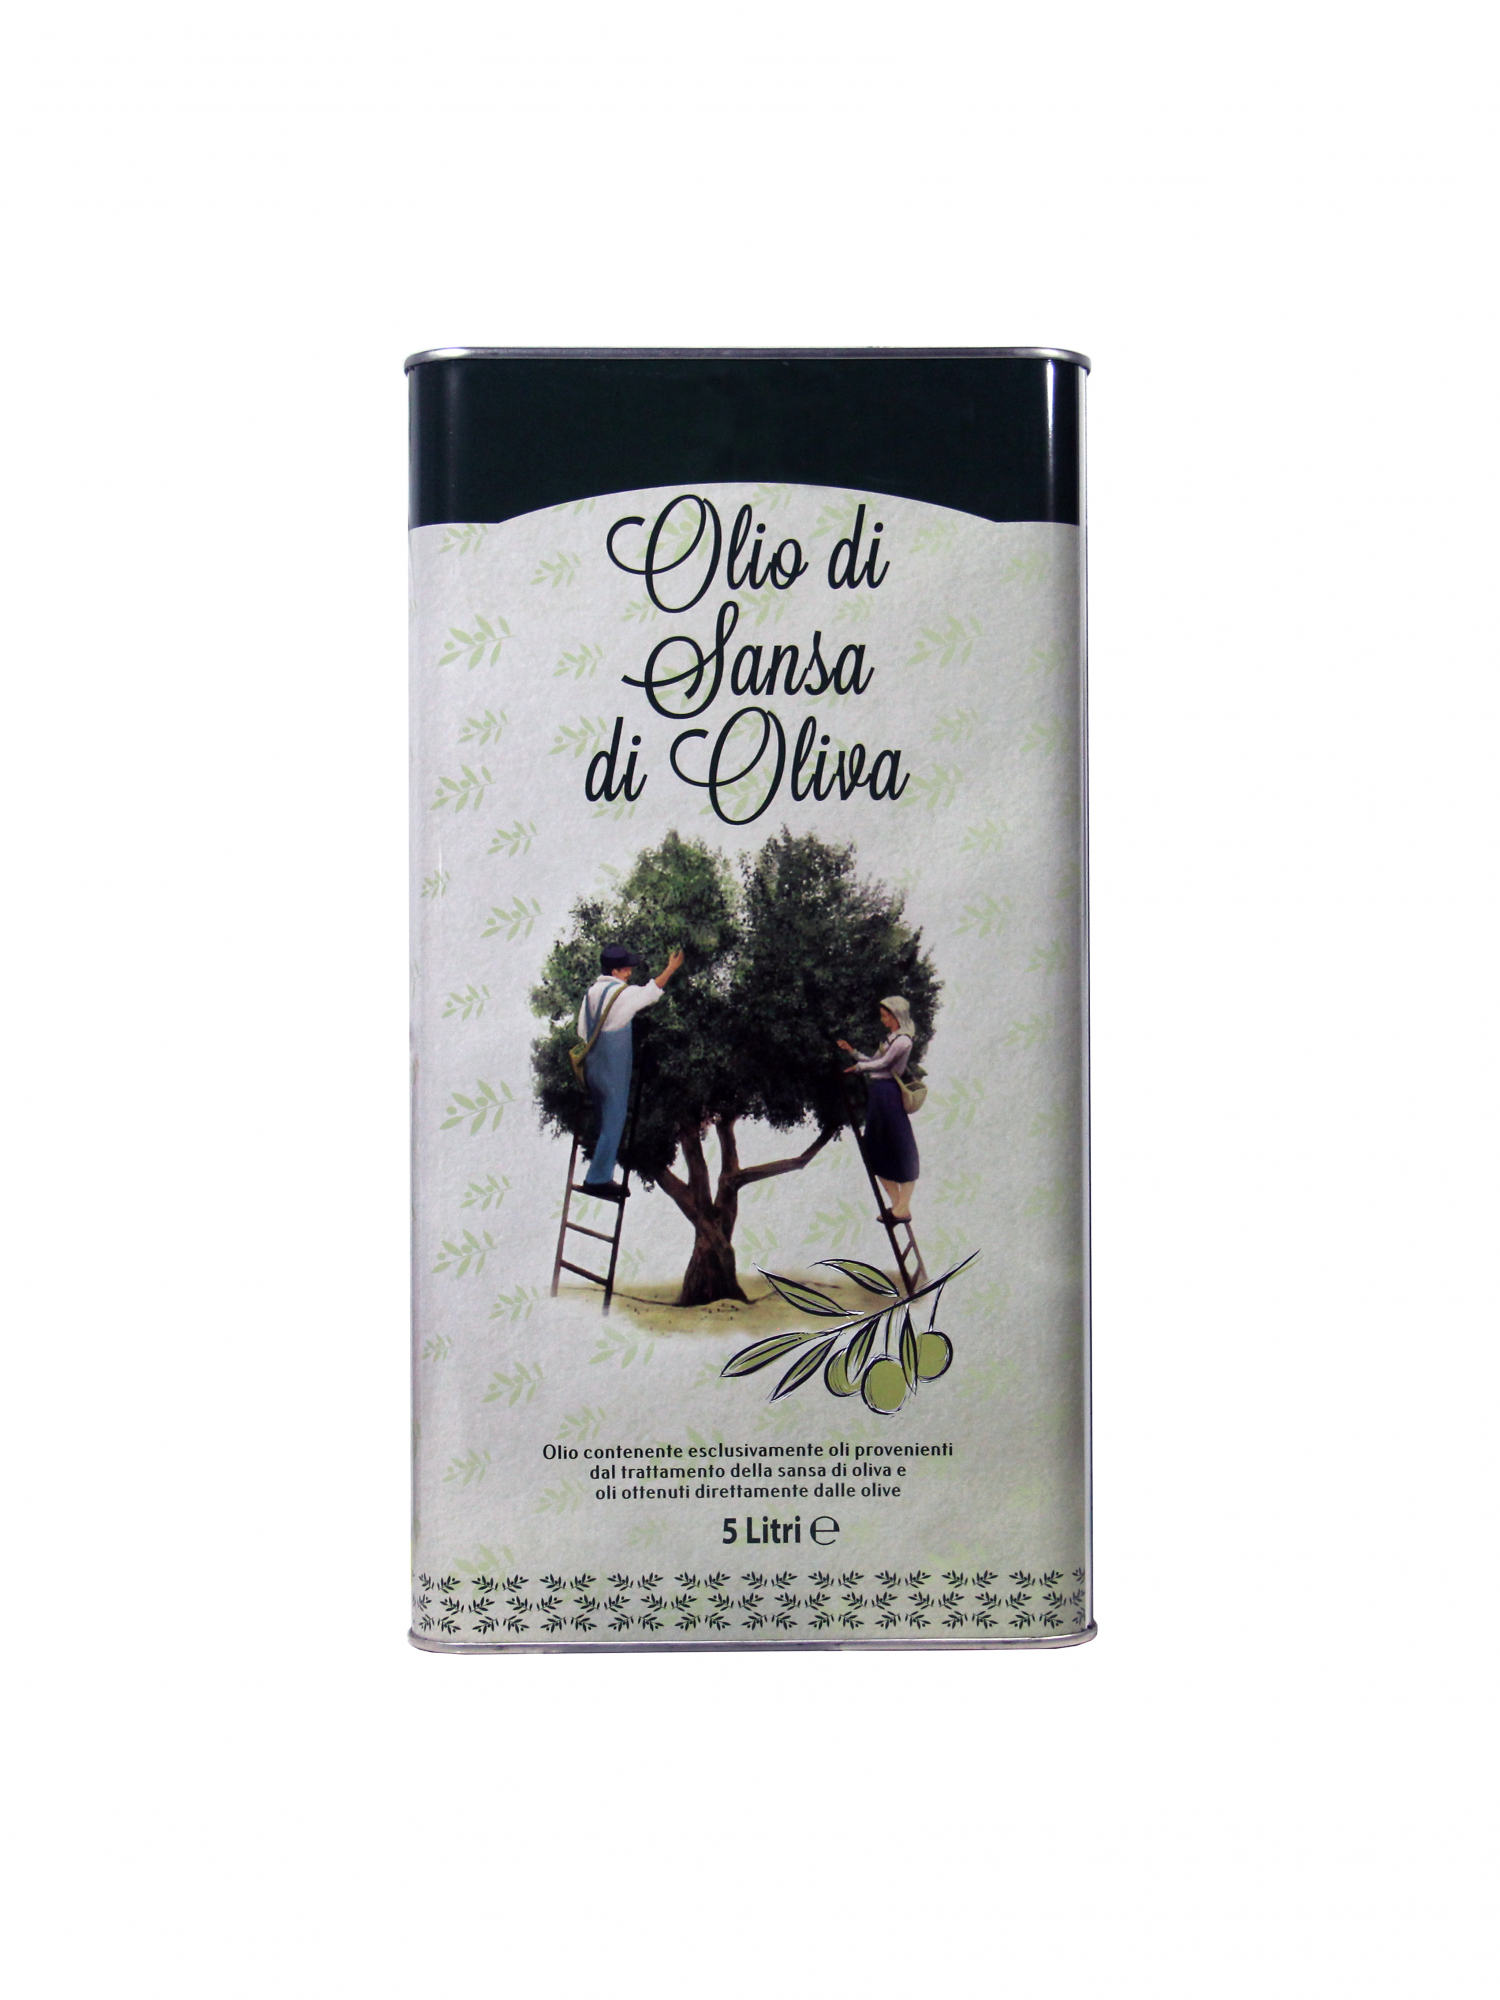 Оливковое масло из оливкового выжима Vesuvio для жарки Olio di sansa di oliva, Италия, 5 л - купить в SR Market, цена на Мегамаркет